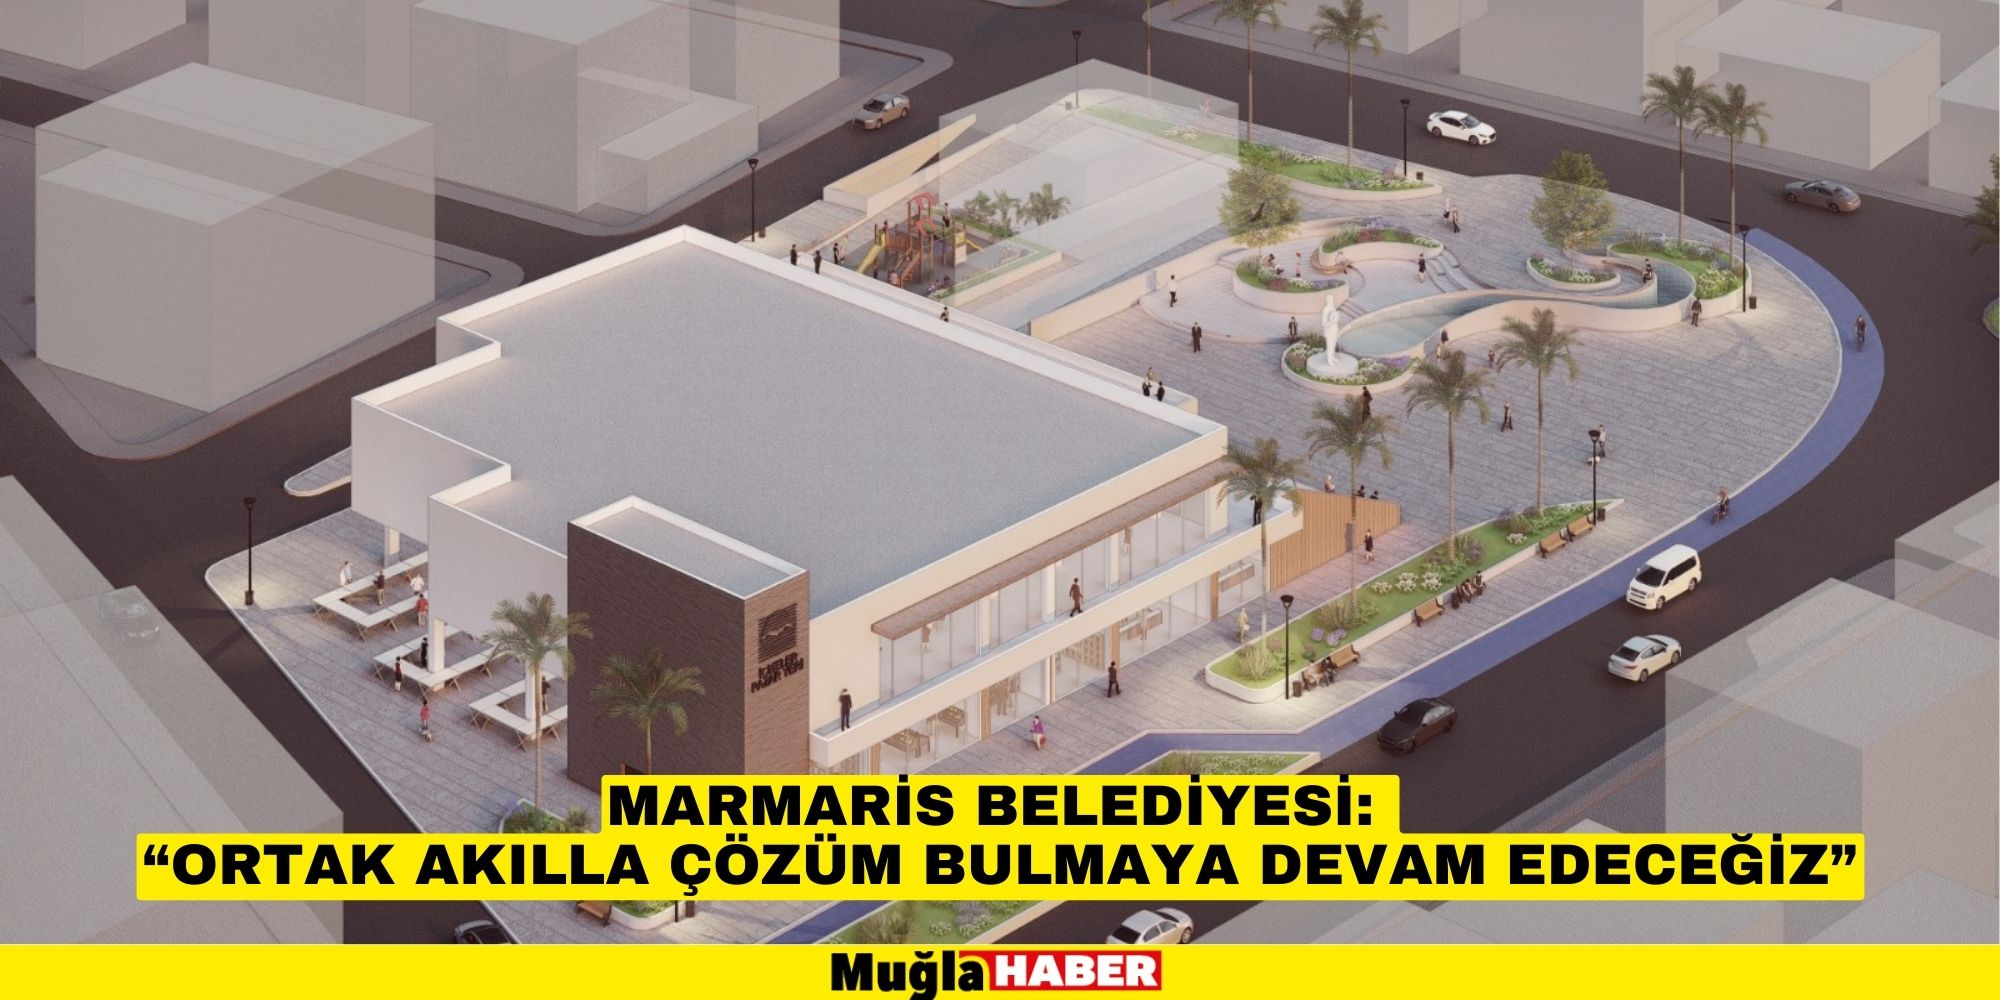 Marmaris Belediyesi: “Ortak akılla çözüm bulmaya devam edeceğiz”